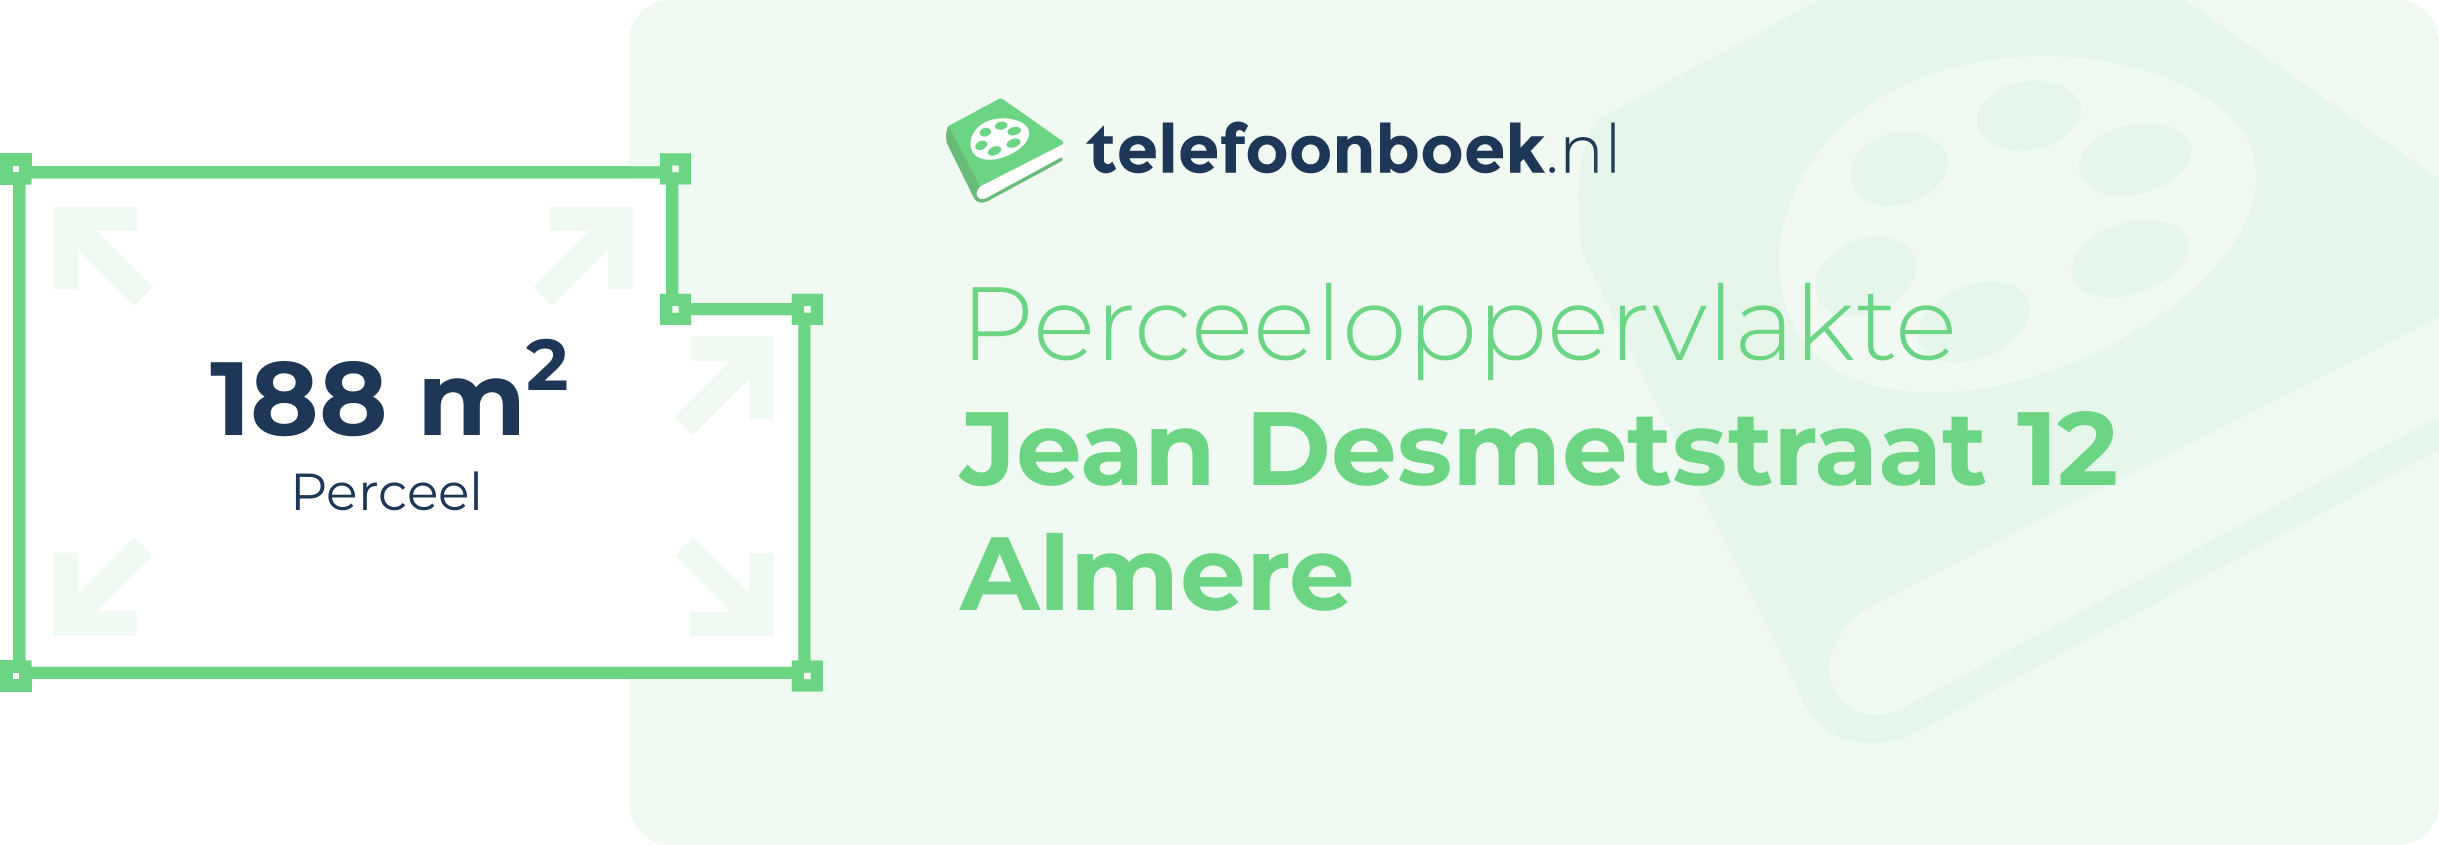 Perceeloppervlakte Jean Desmetstraat 12 Almere